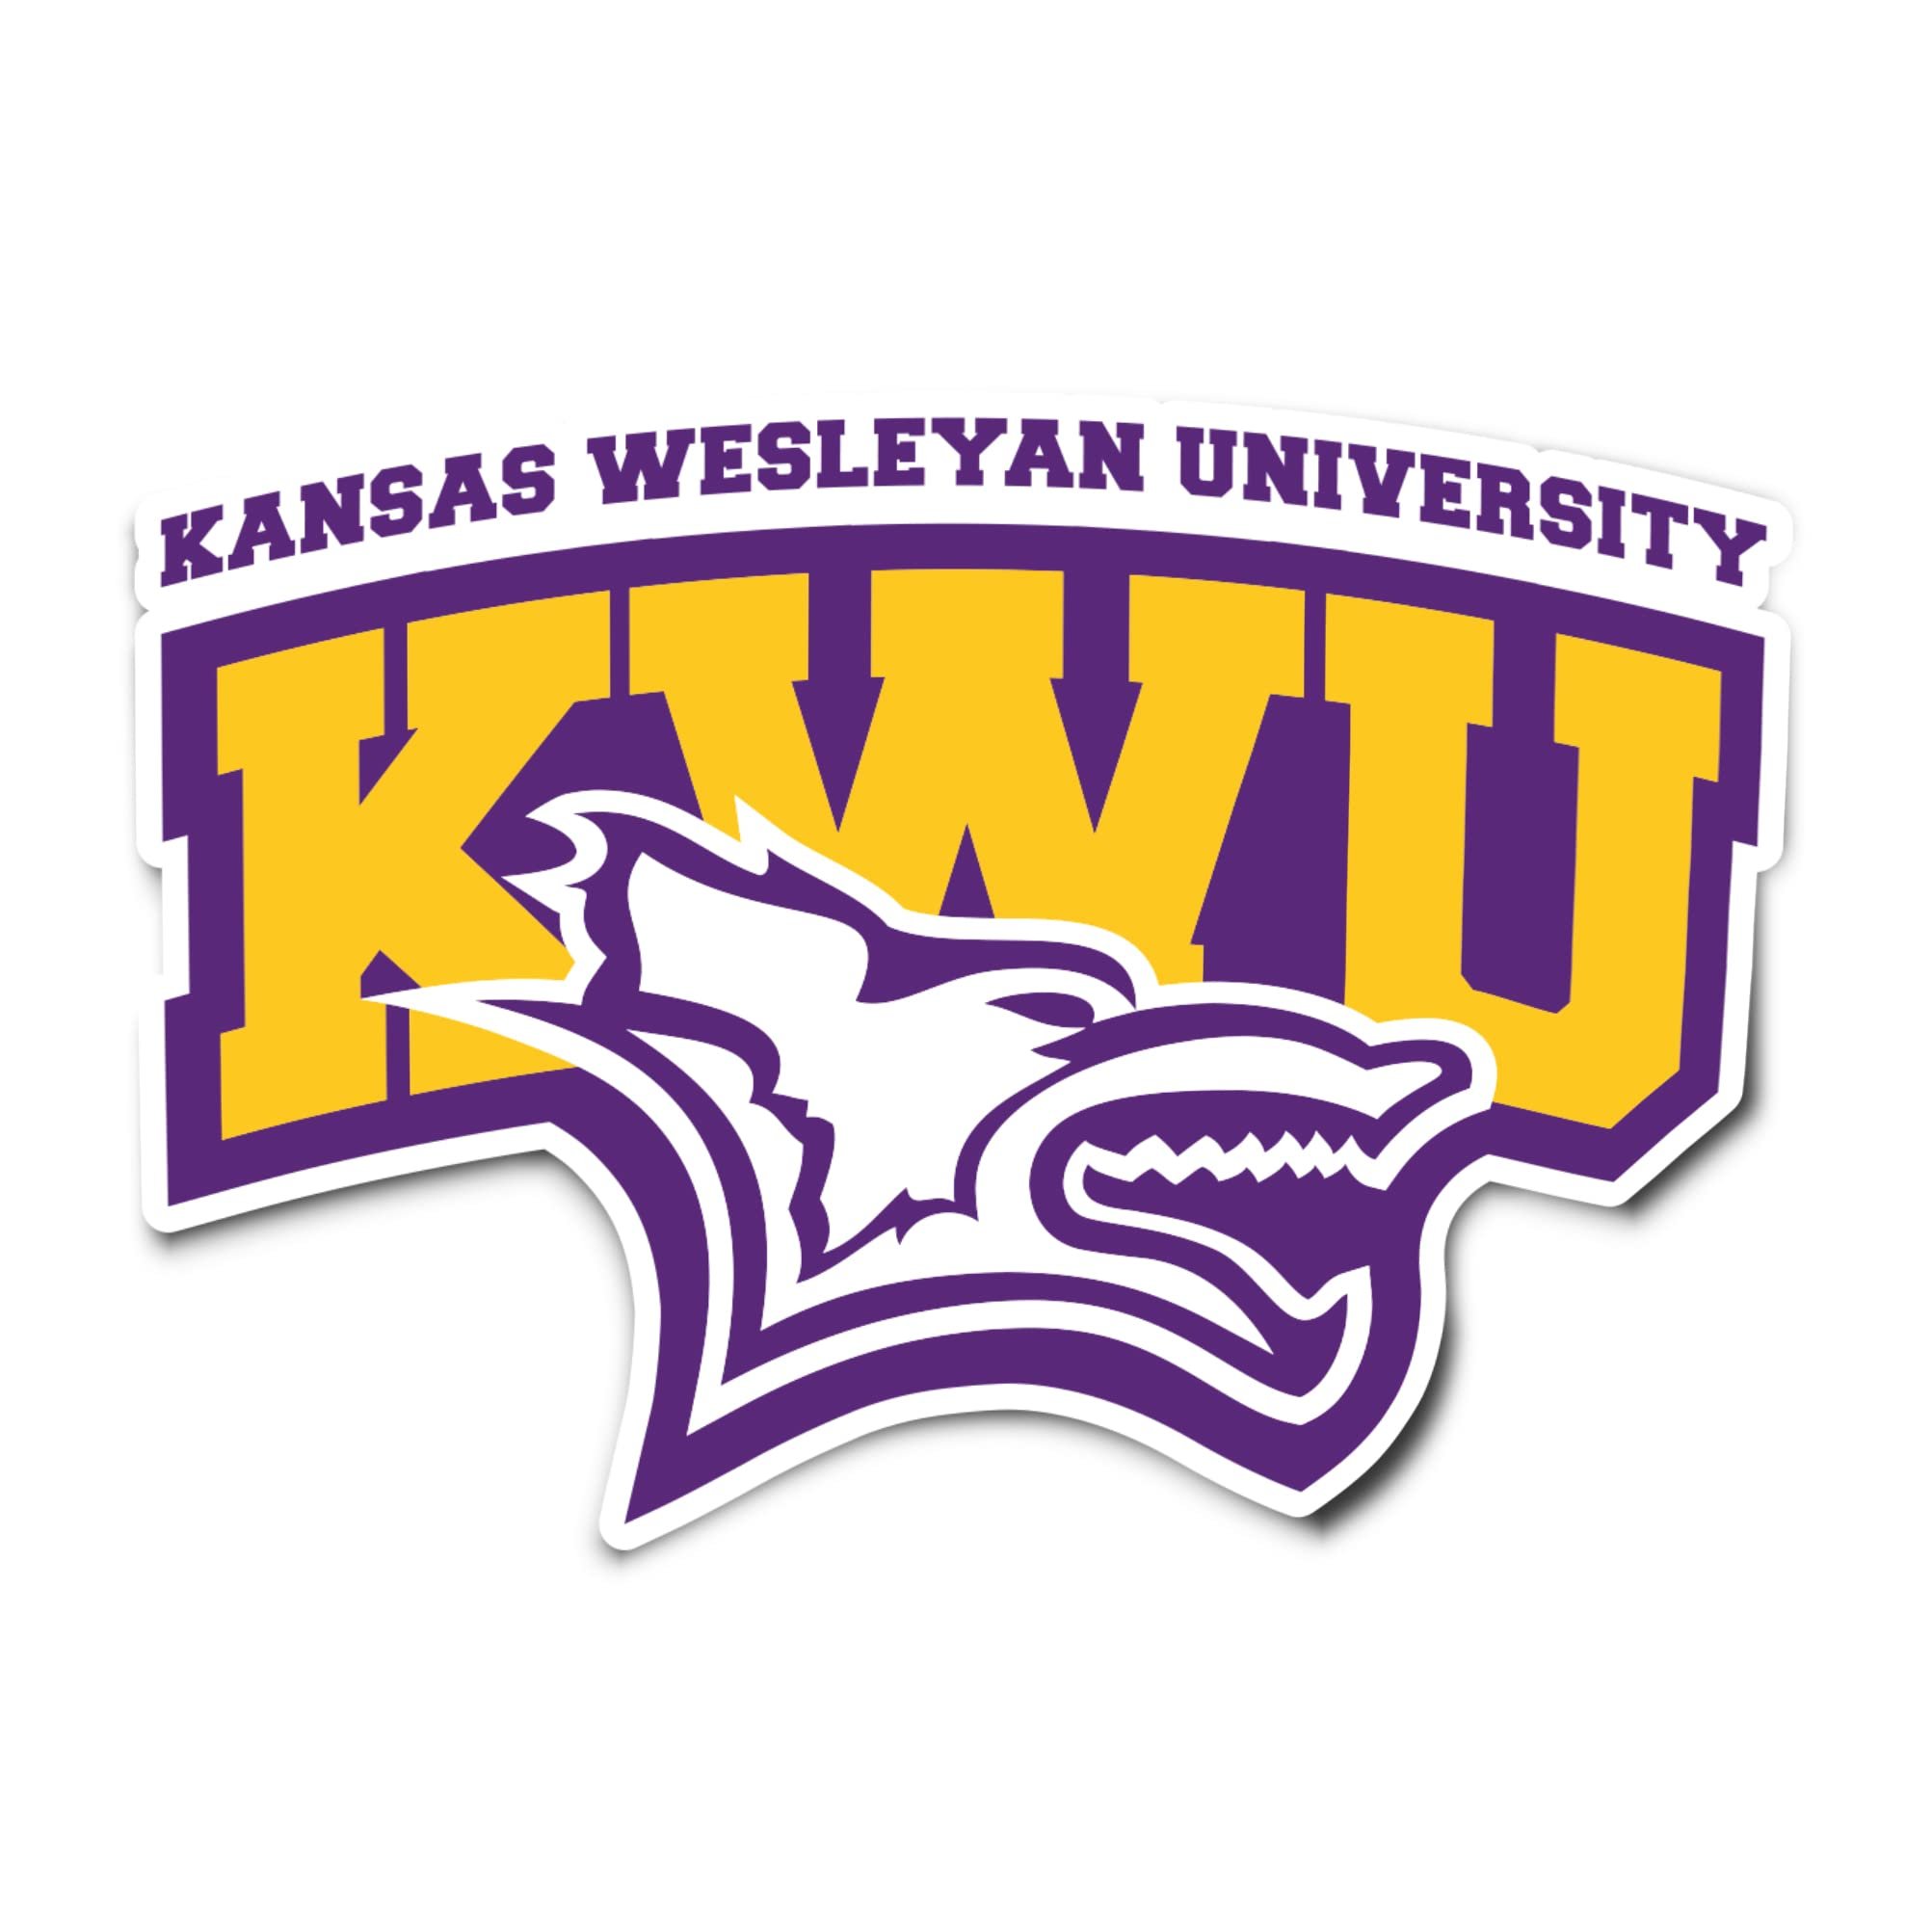 Kansas Wesleyan University.jpg